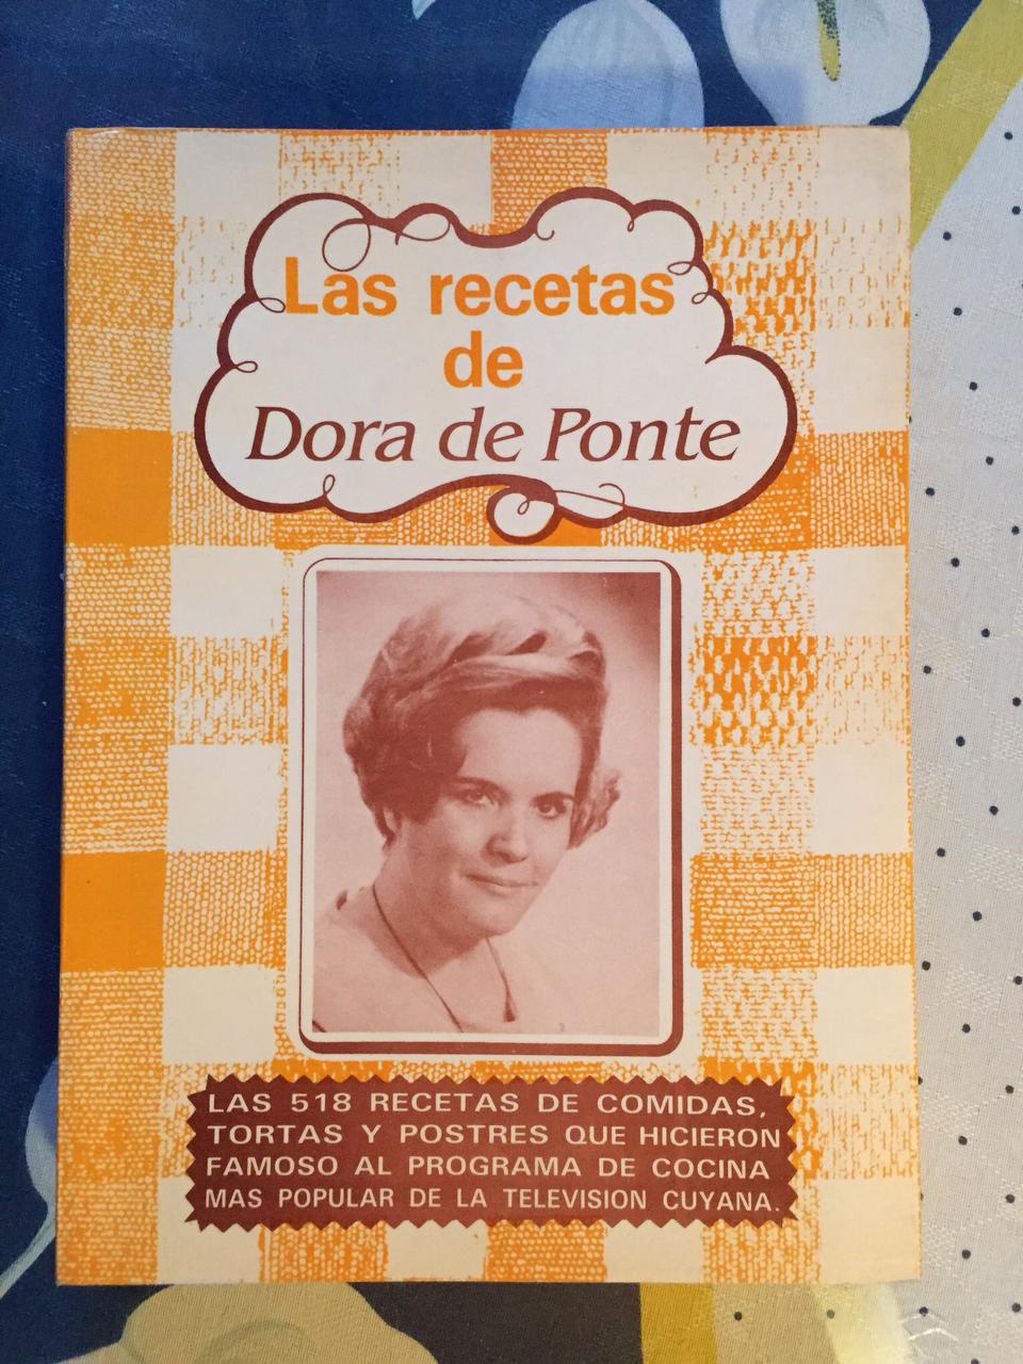 Un libro con las mejores recetas de Dora de Ponte, conocida cariñosamente como "Dorita".